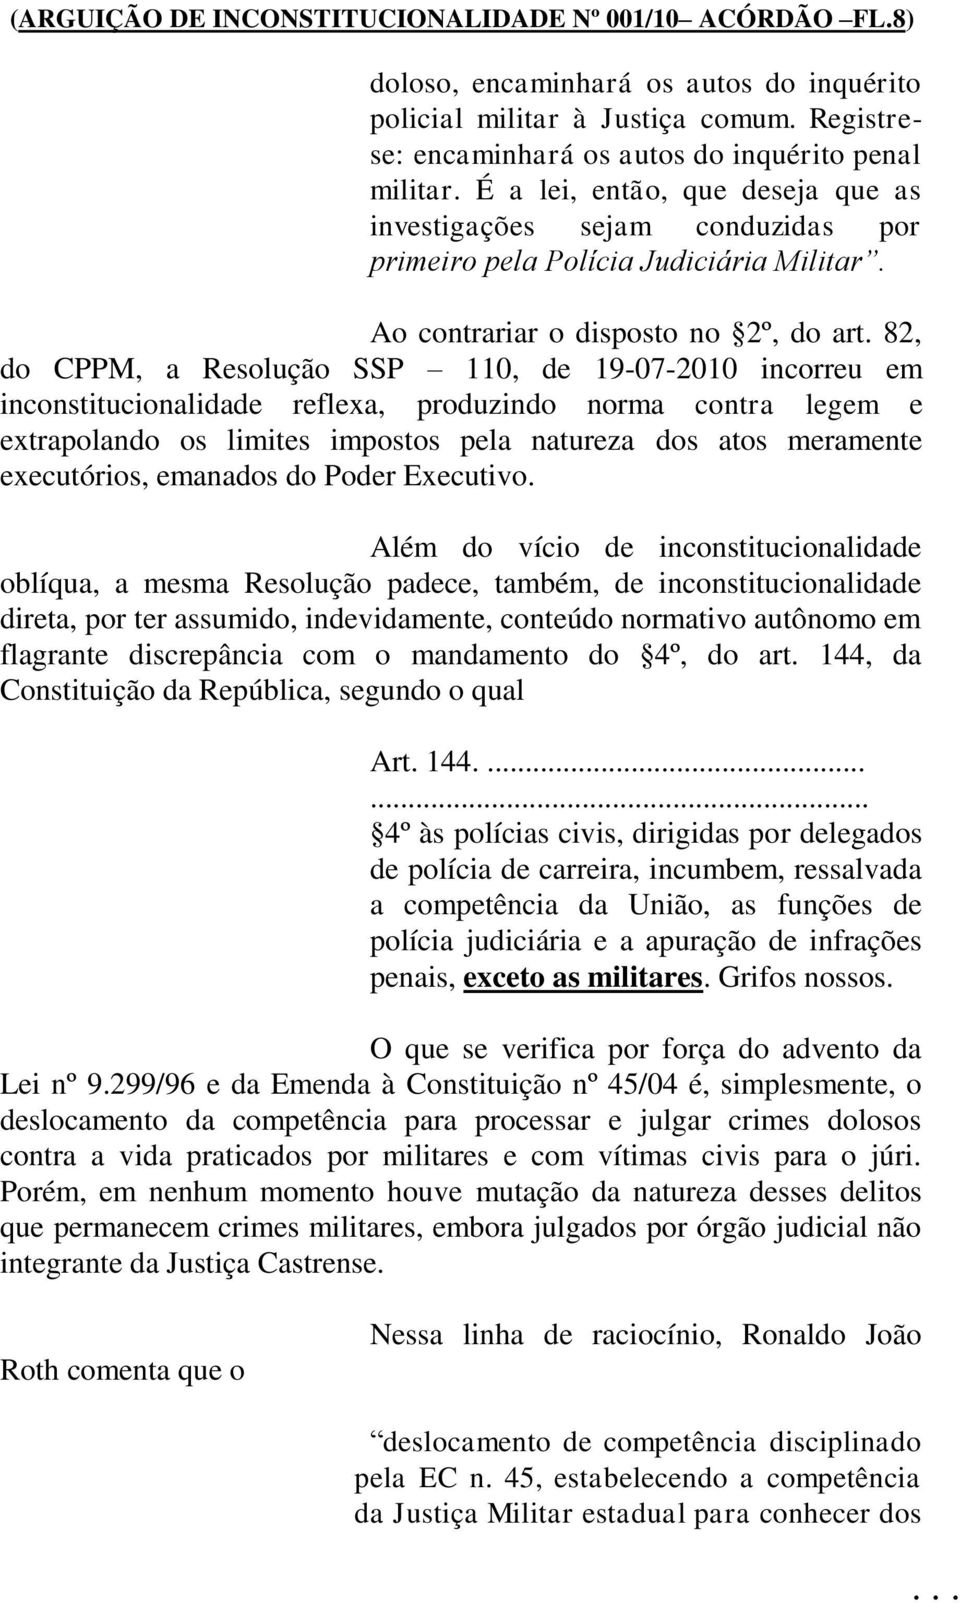 82, do CPPM, a Resolução SSP 110, de 19-07-2010 incorreu em inconstitucionalidade reflexa, produzindo norma contra legem e extrapolando os limites impostos pela natureza dos atos meramente